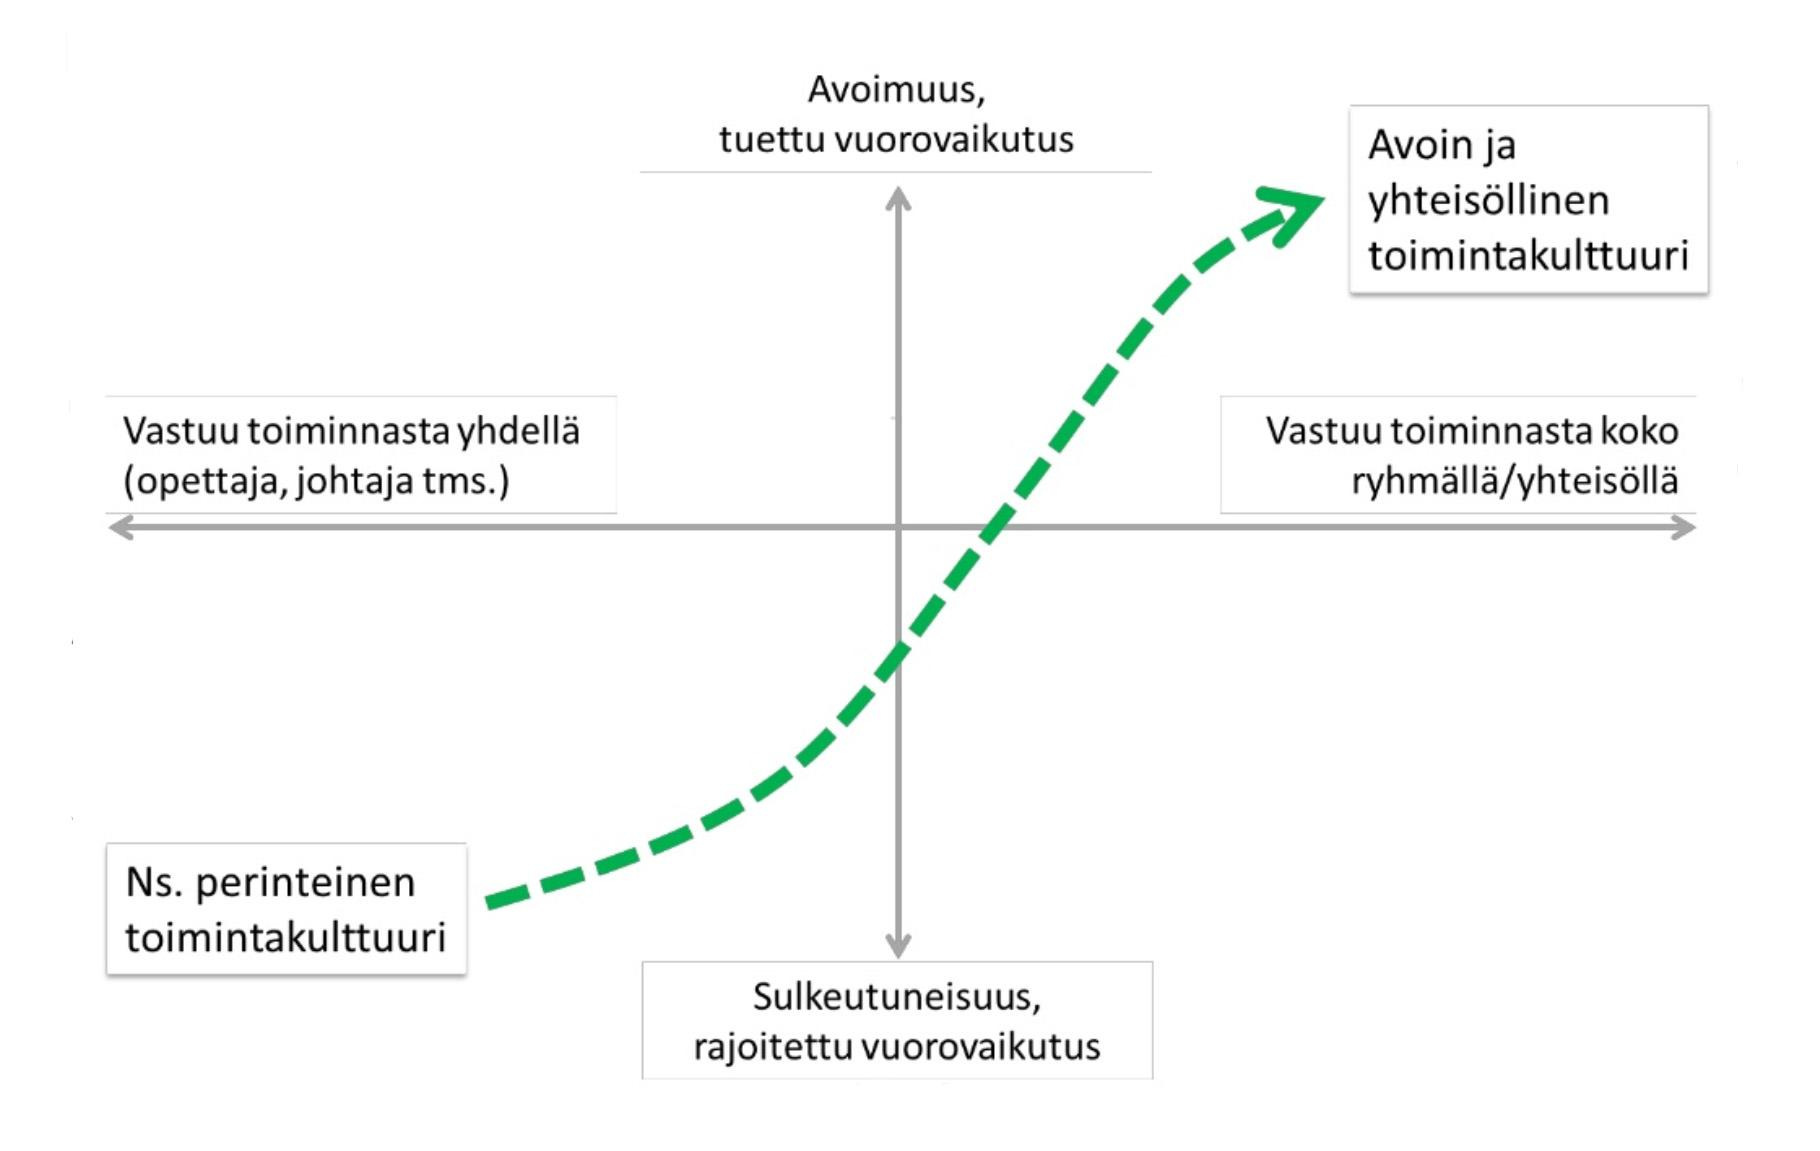 Harto Pönkä (2014): Tvt opetuksen, rehtorin ja opettajien verkostoitumisen tukena Johtamisen tärkeäksi osa-alueeksi nousee nimenomaan opetusyhteisön oppimisprosessin ohjaaminen, jossa olennaista on